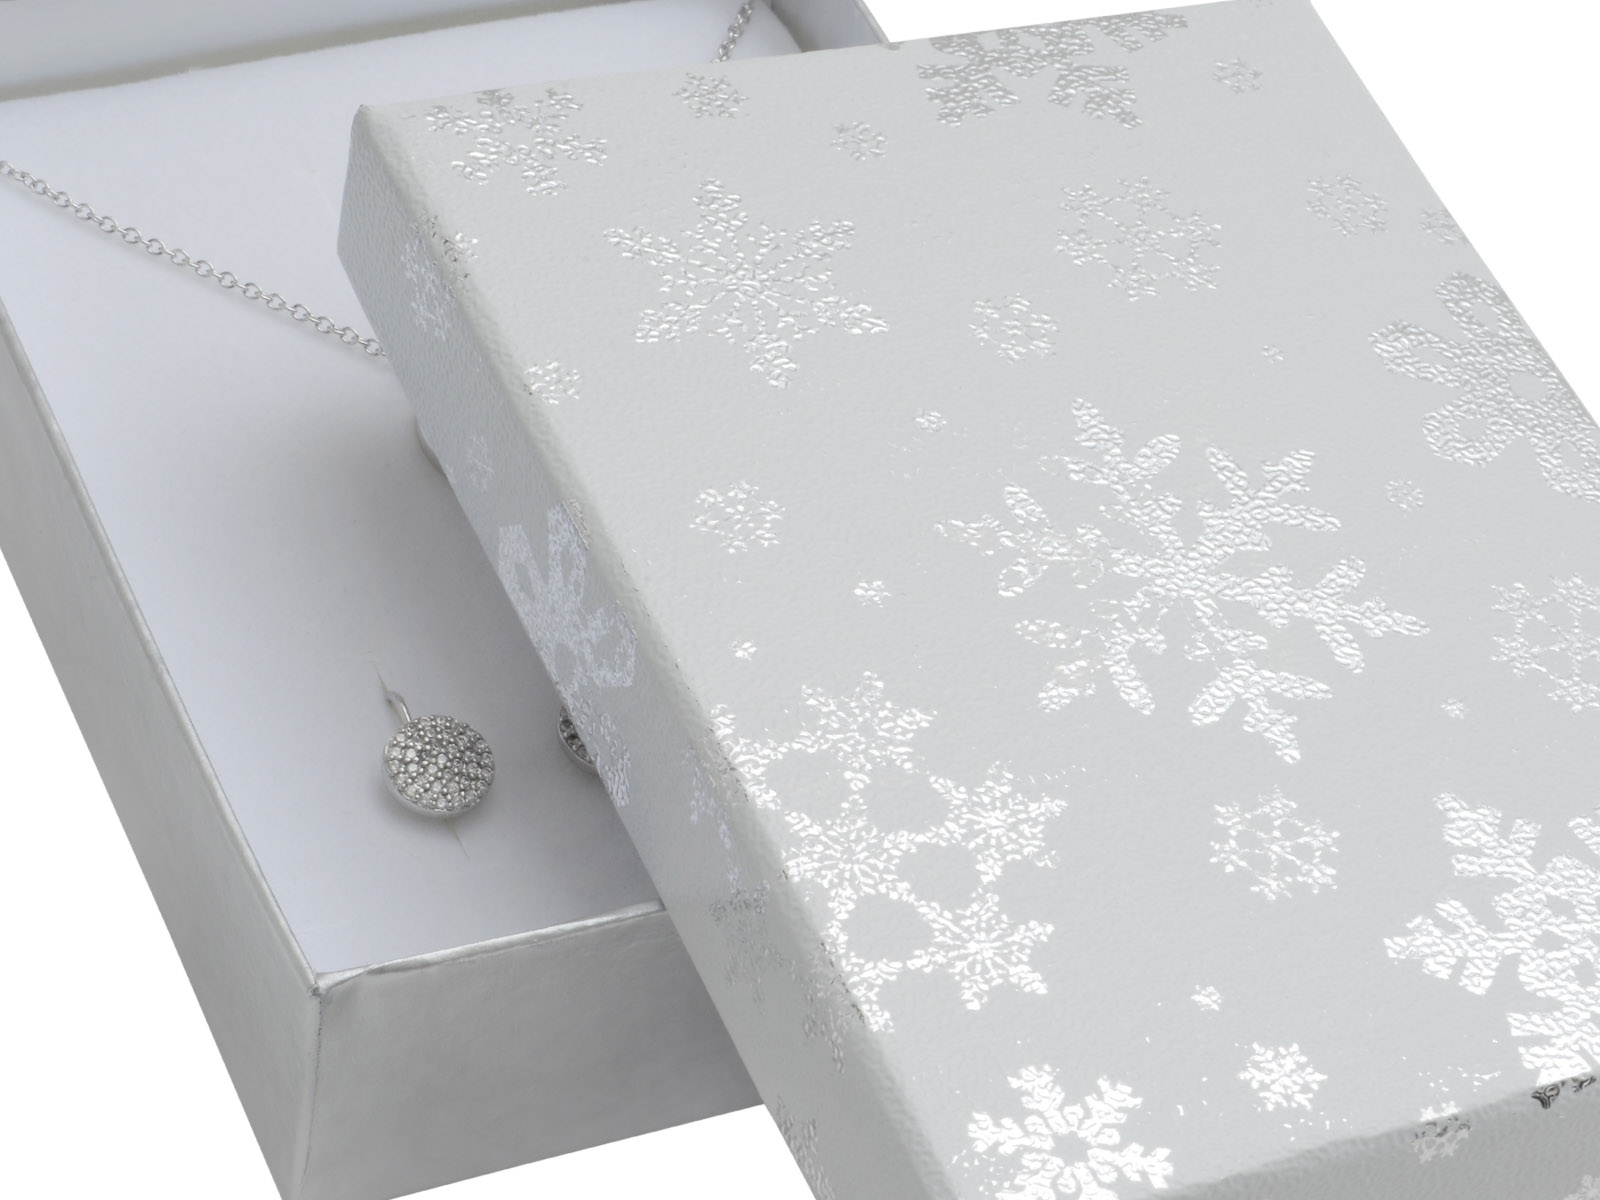 Vianočná darčeková krabička na súpravu - biela